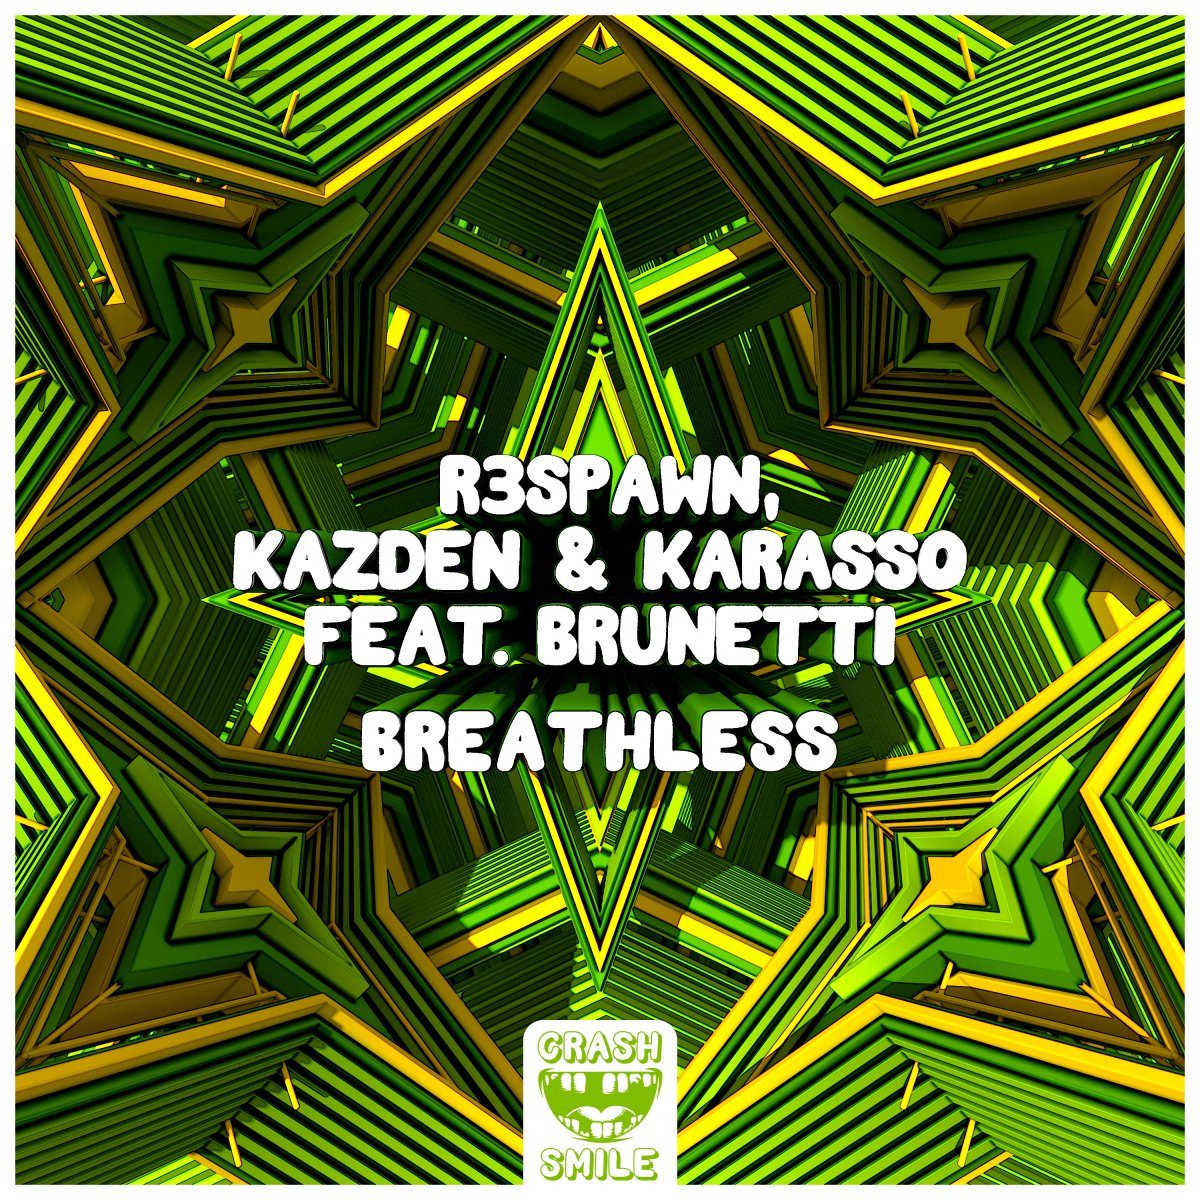 Breathless - R3SPAWN⁠, KAZDEN⁠ & Karasso⁠ feat. Brunetti⁠ 